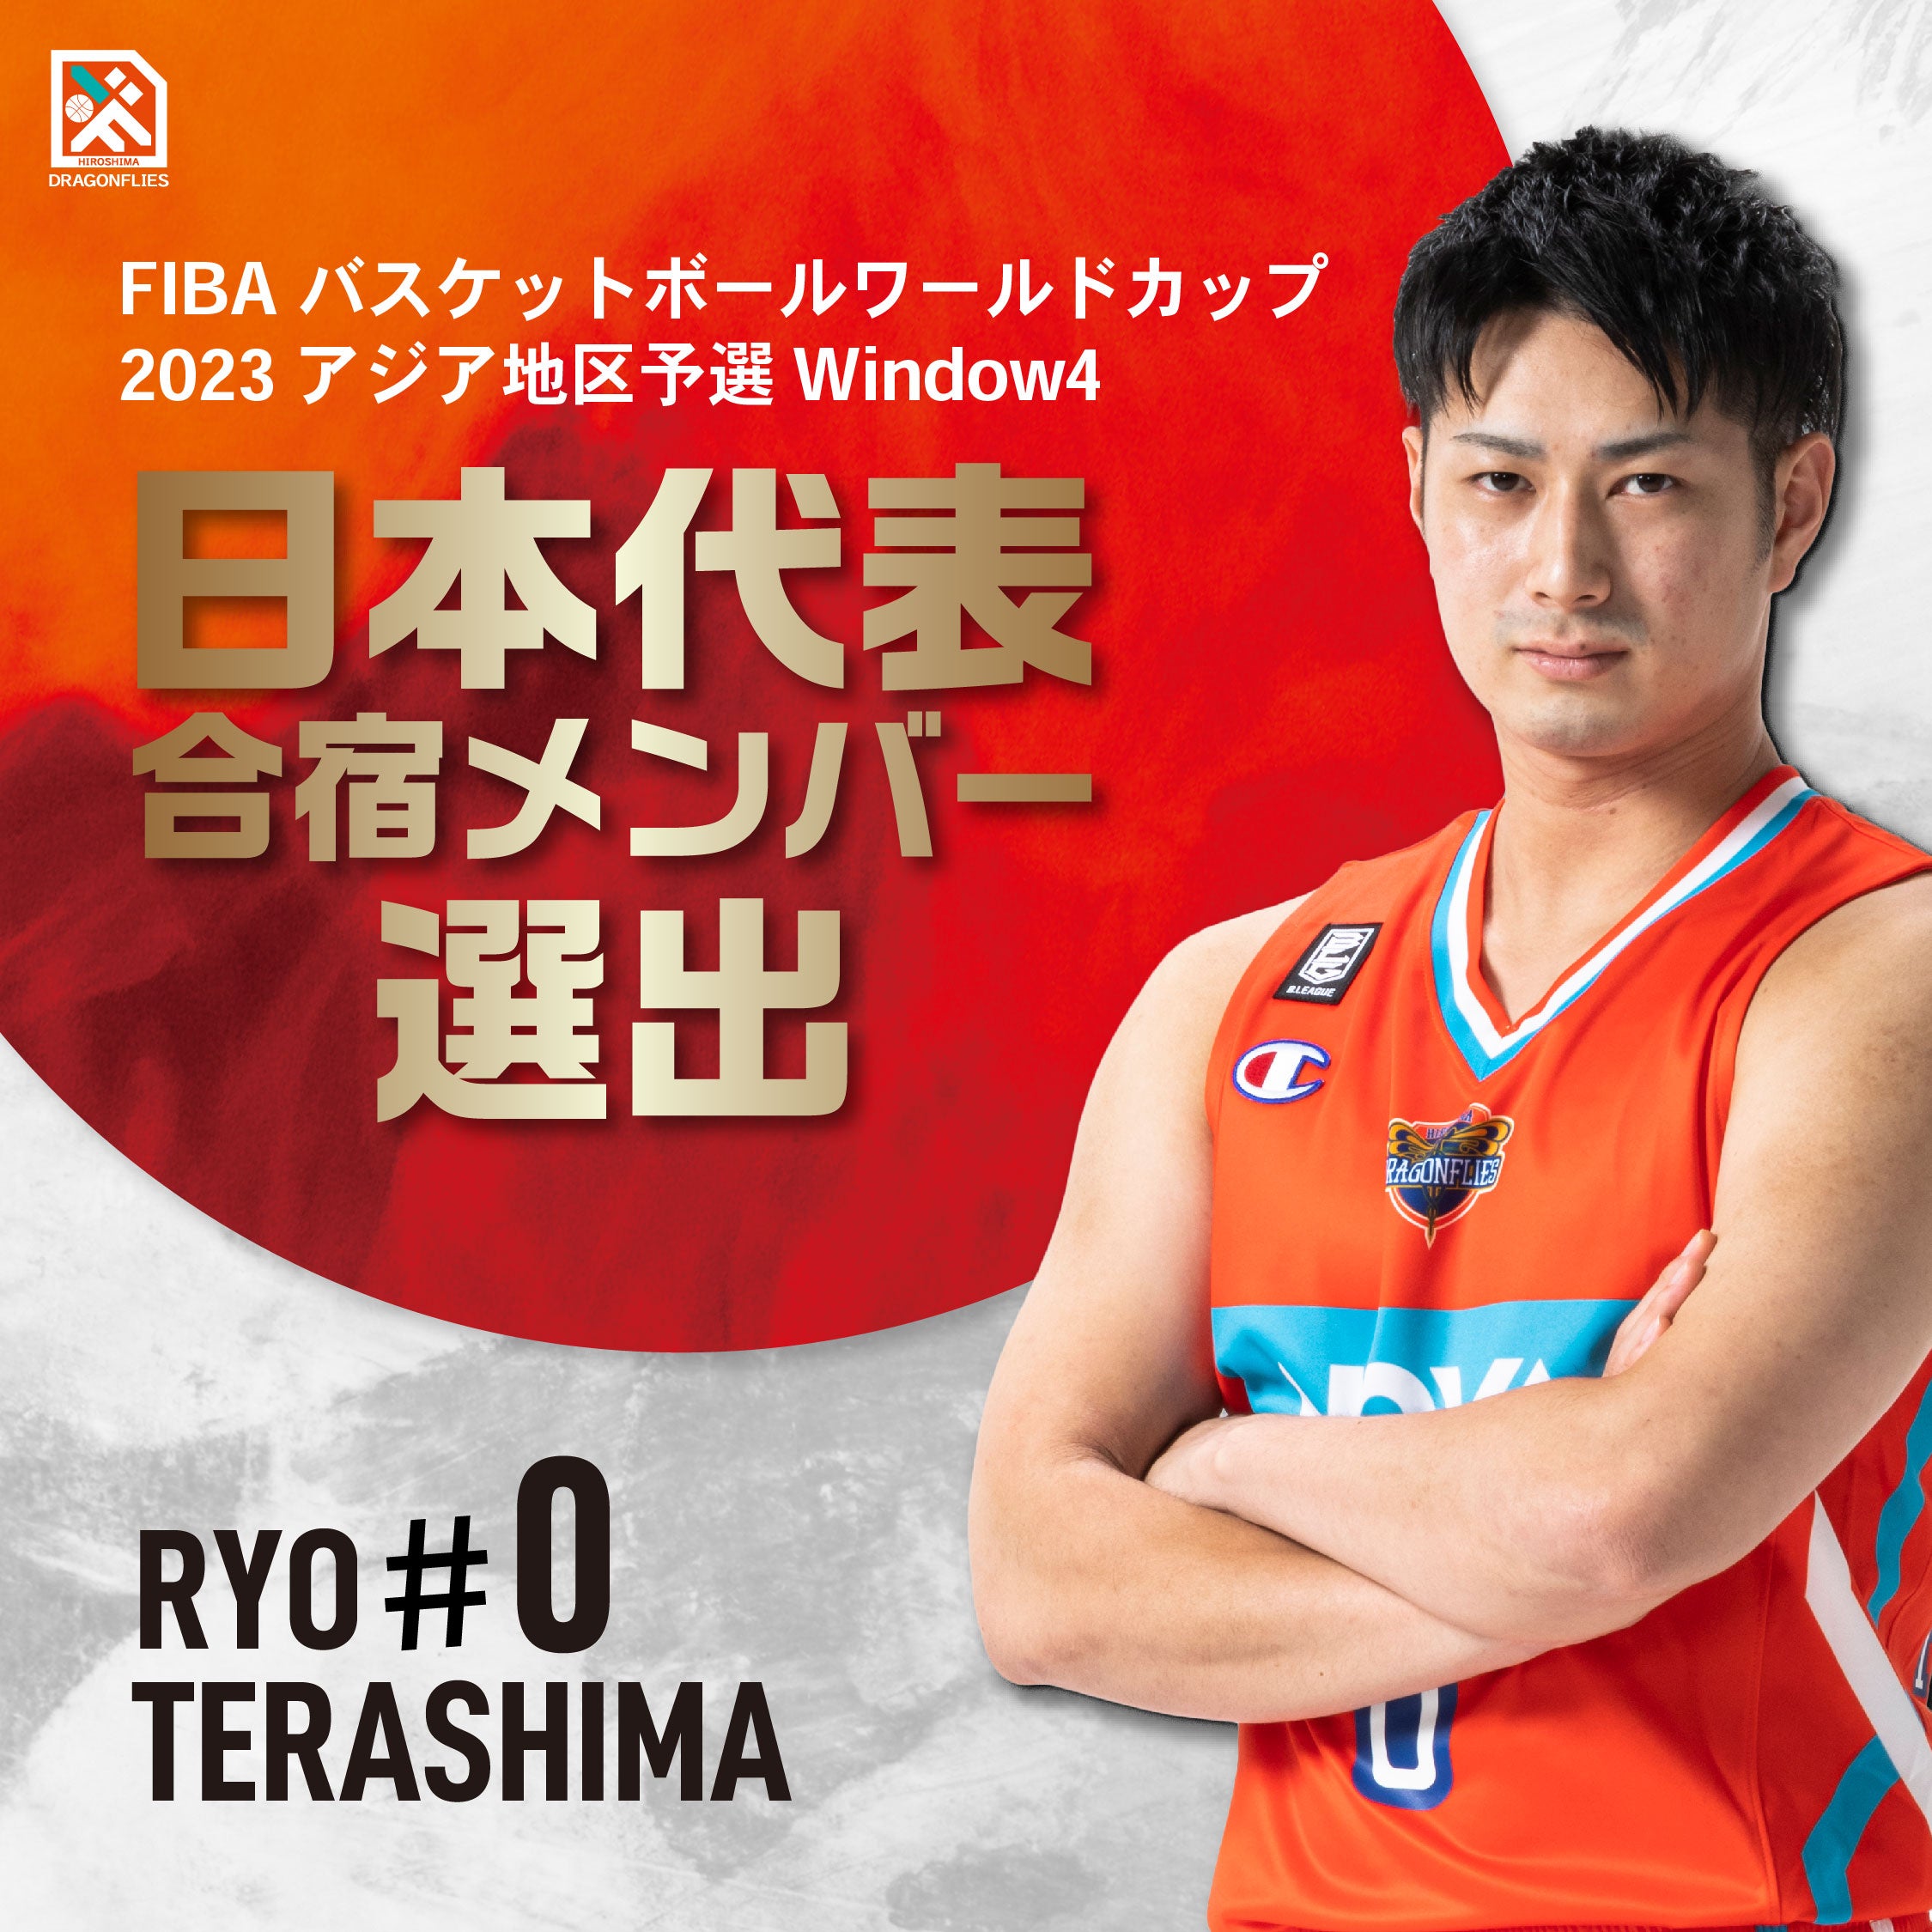 寺嶋良選手「FIBA バスケットボールワールドカップ2023アジア地区予選